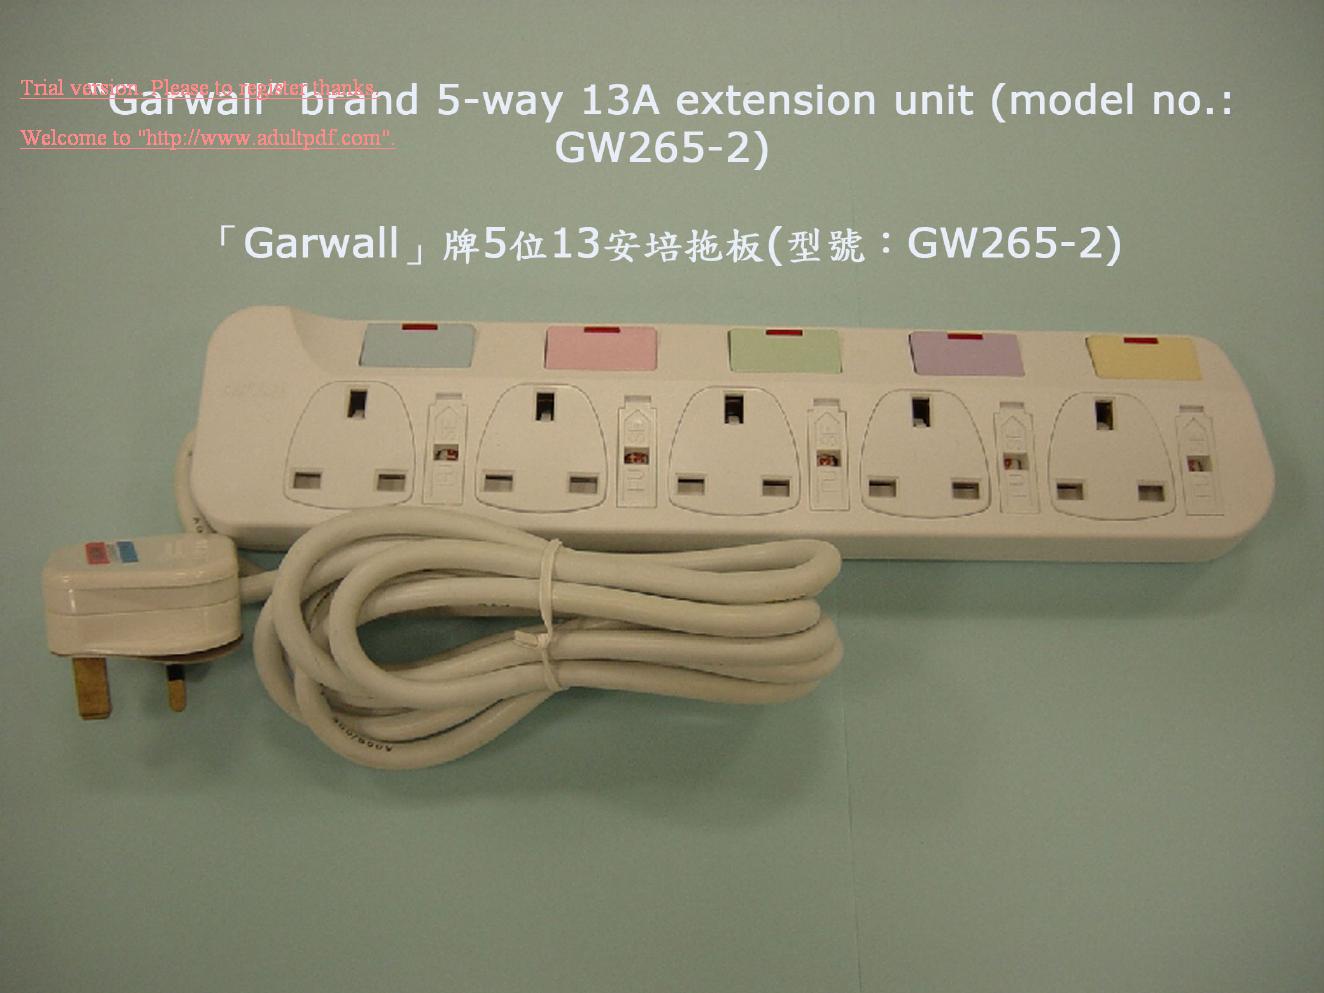 5-way 13A extension unit (model no.: GW265-2)